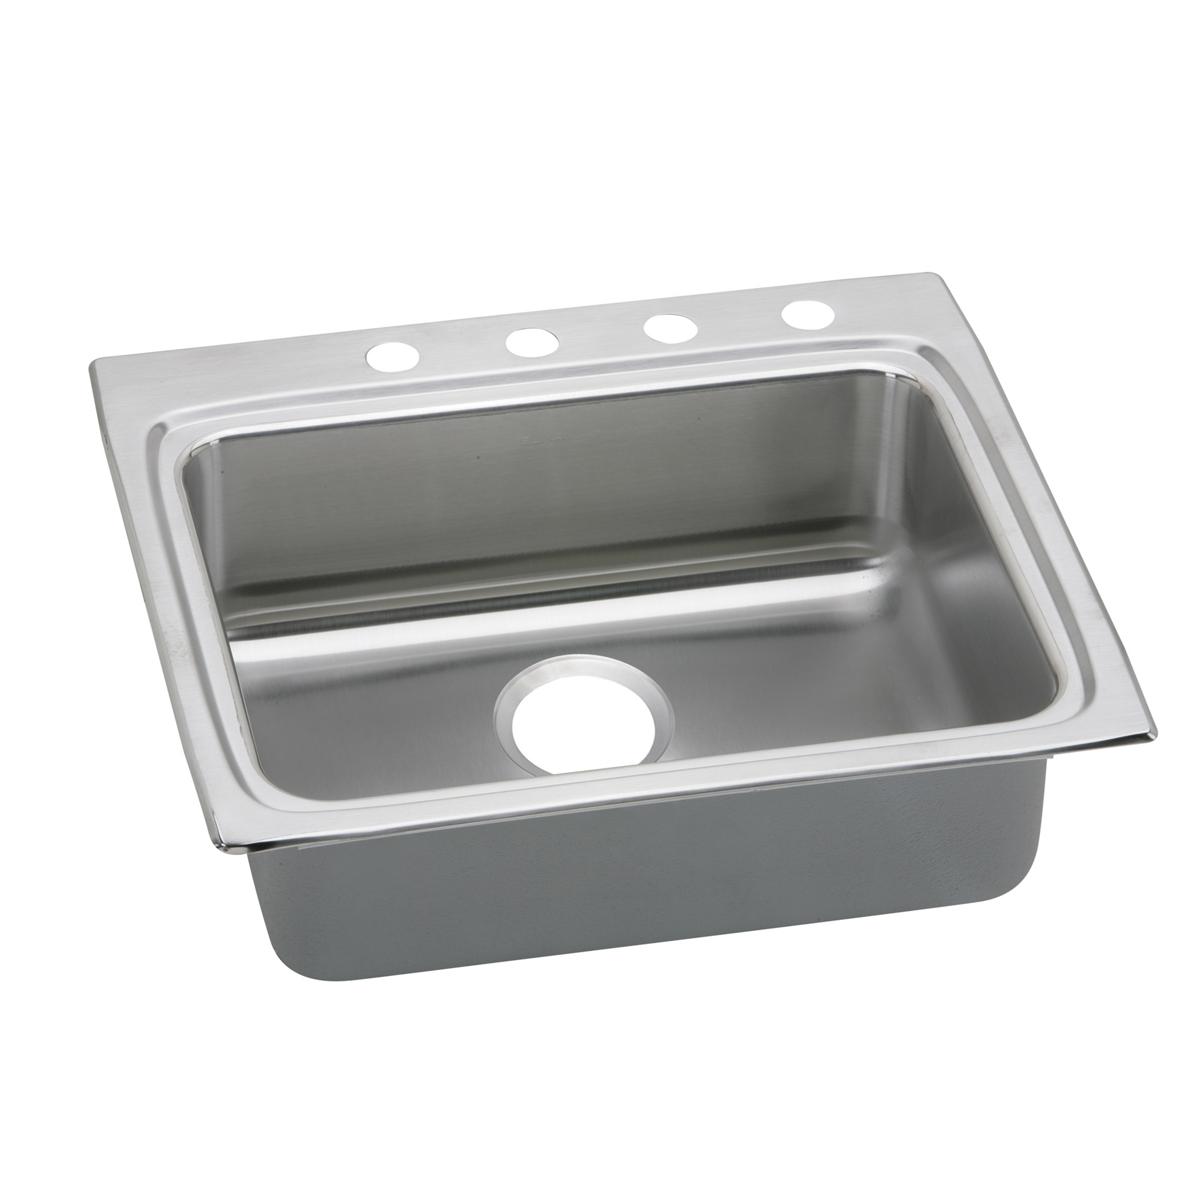 Elkay Stainless Steel Single Bowl Drop-in Sink 523878